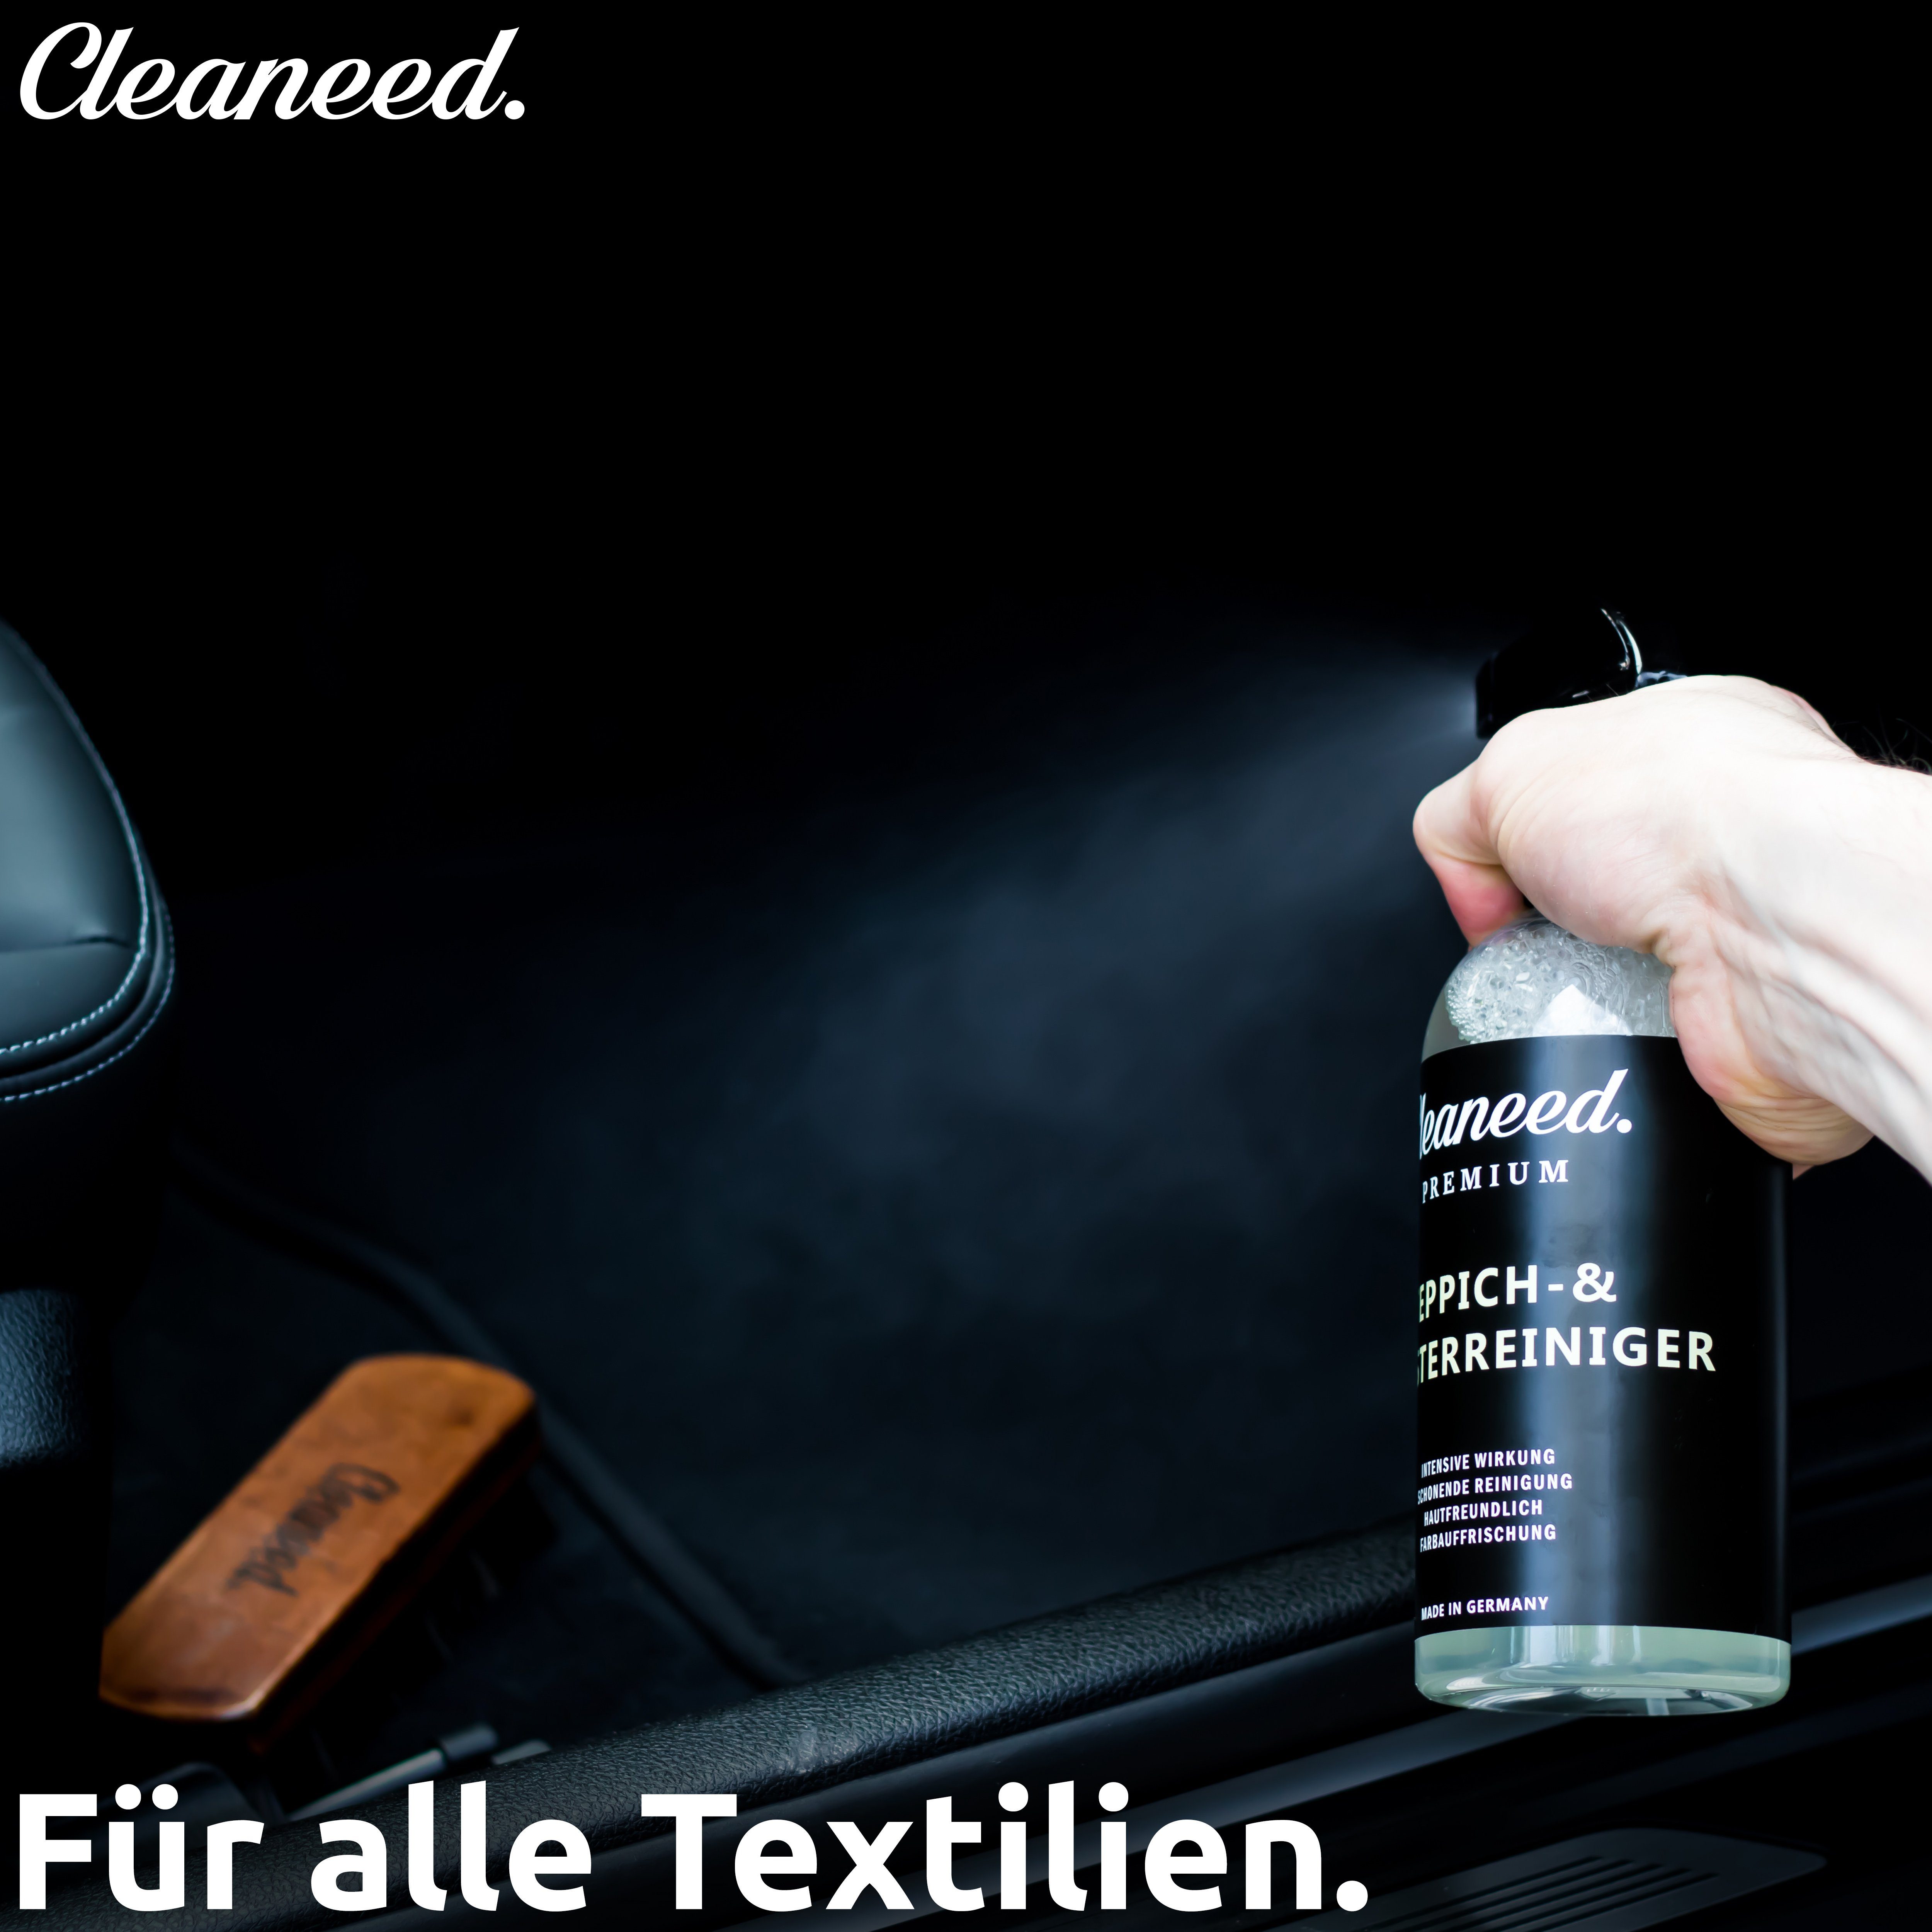 Germany Hautfreundlich, Polsterreiniger in Teppich- Schonende Farbauffrischung) und – Reinigung, Premium Polsterreiniger Cleaneed (Made